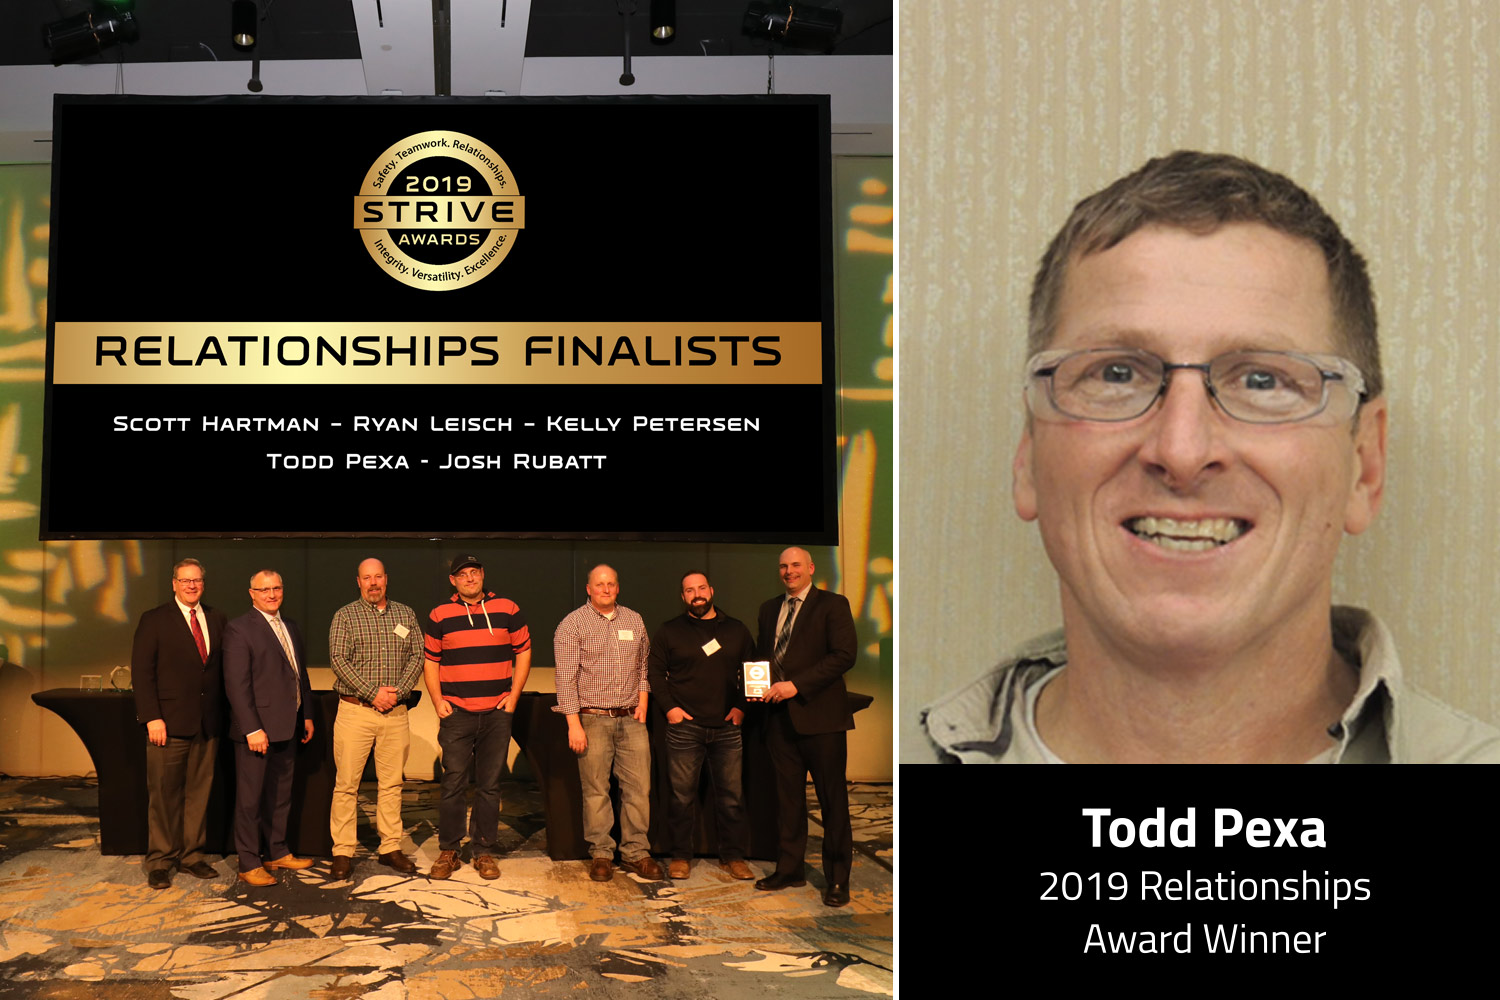 Todd Pexa, 2019 Relationships Award Winner